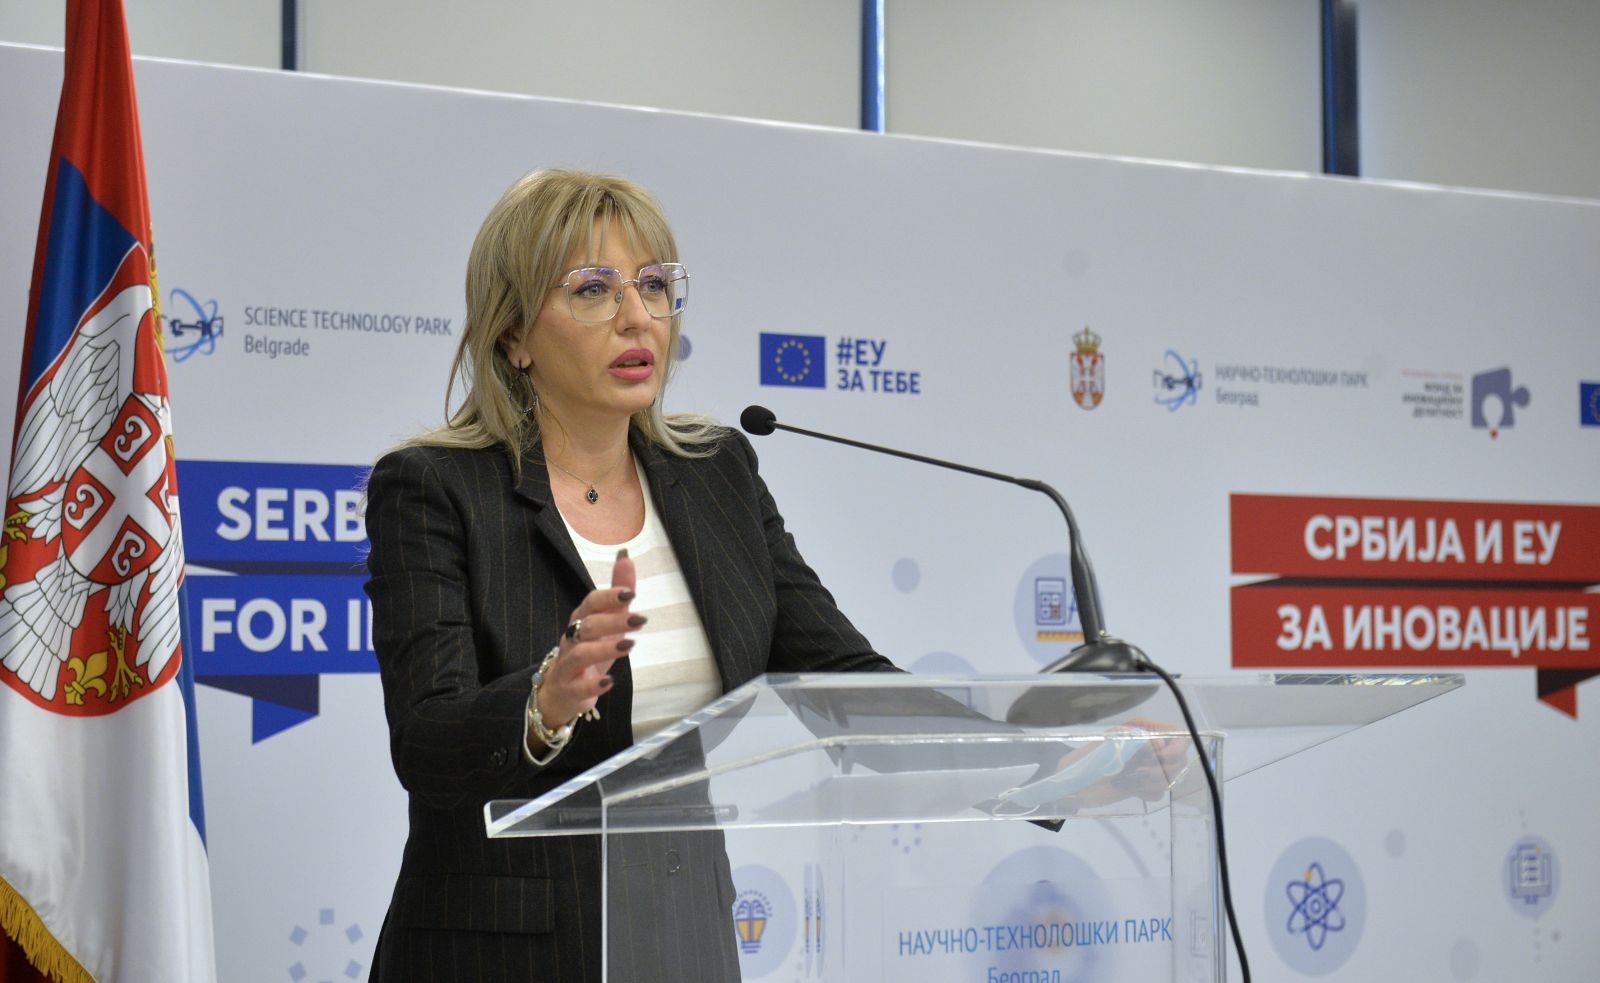 Ј. Jоксимовић: Иновацијама подижемо конкурентност Србије и ЕУ